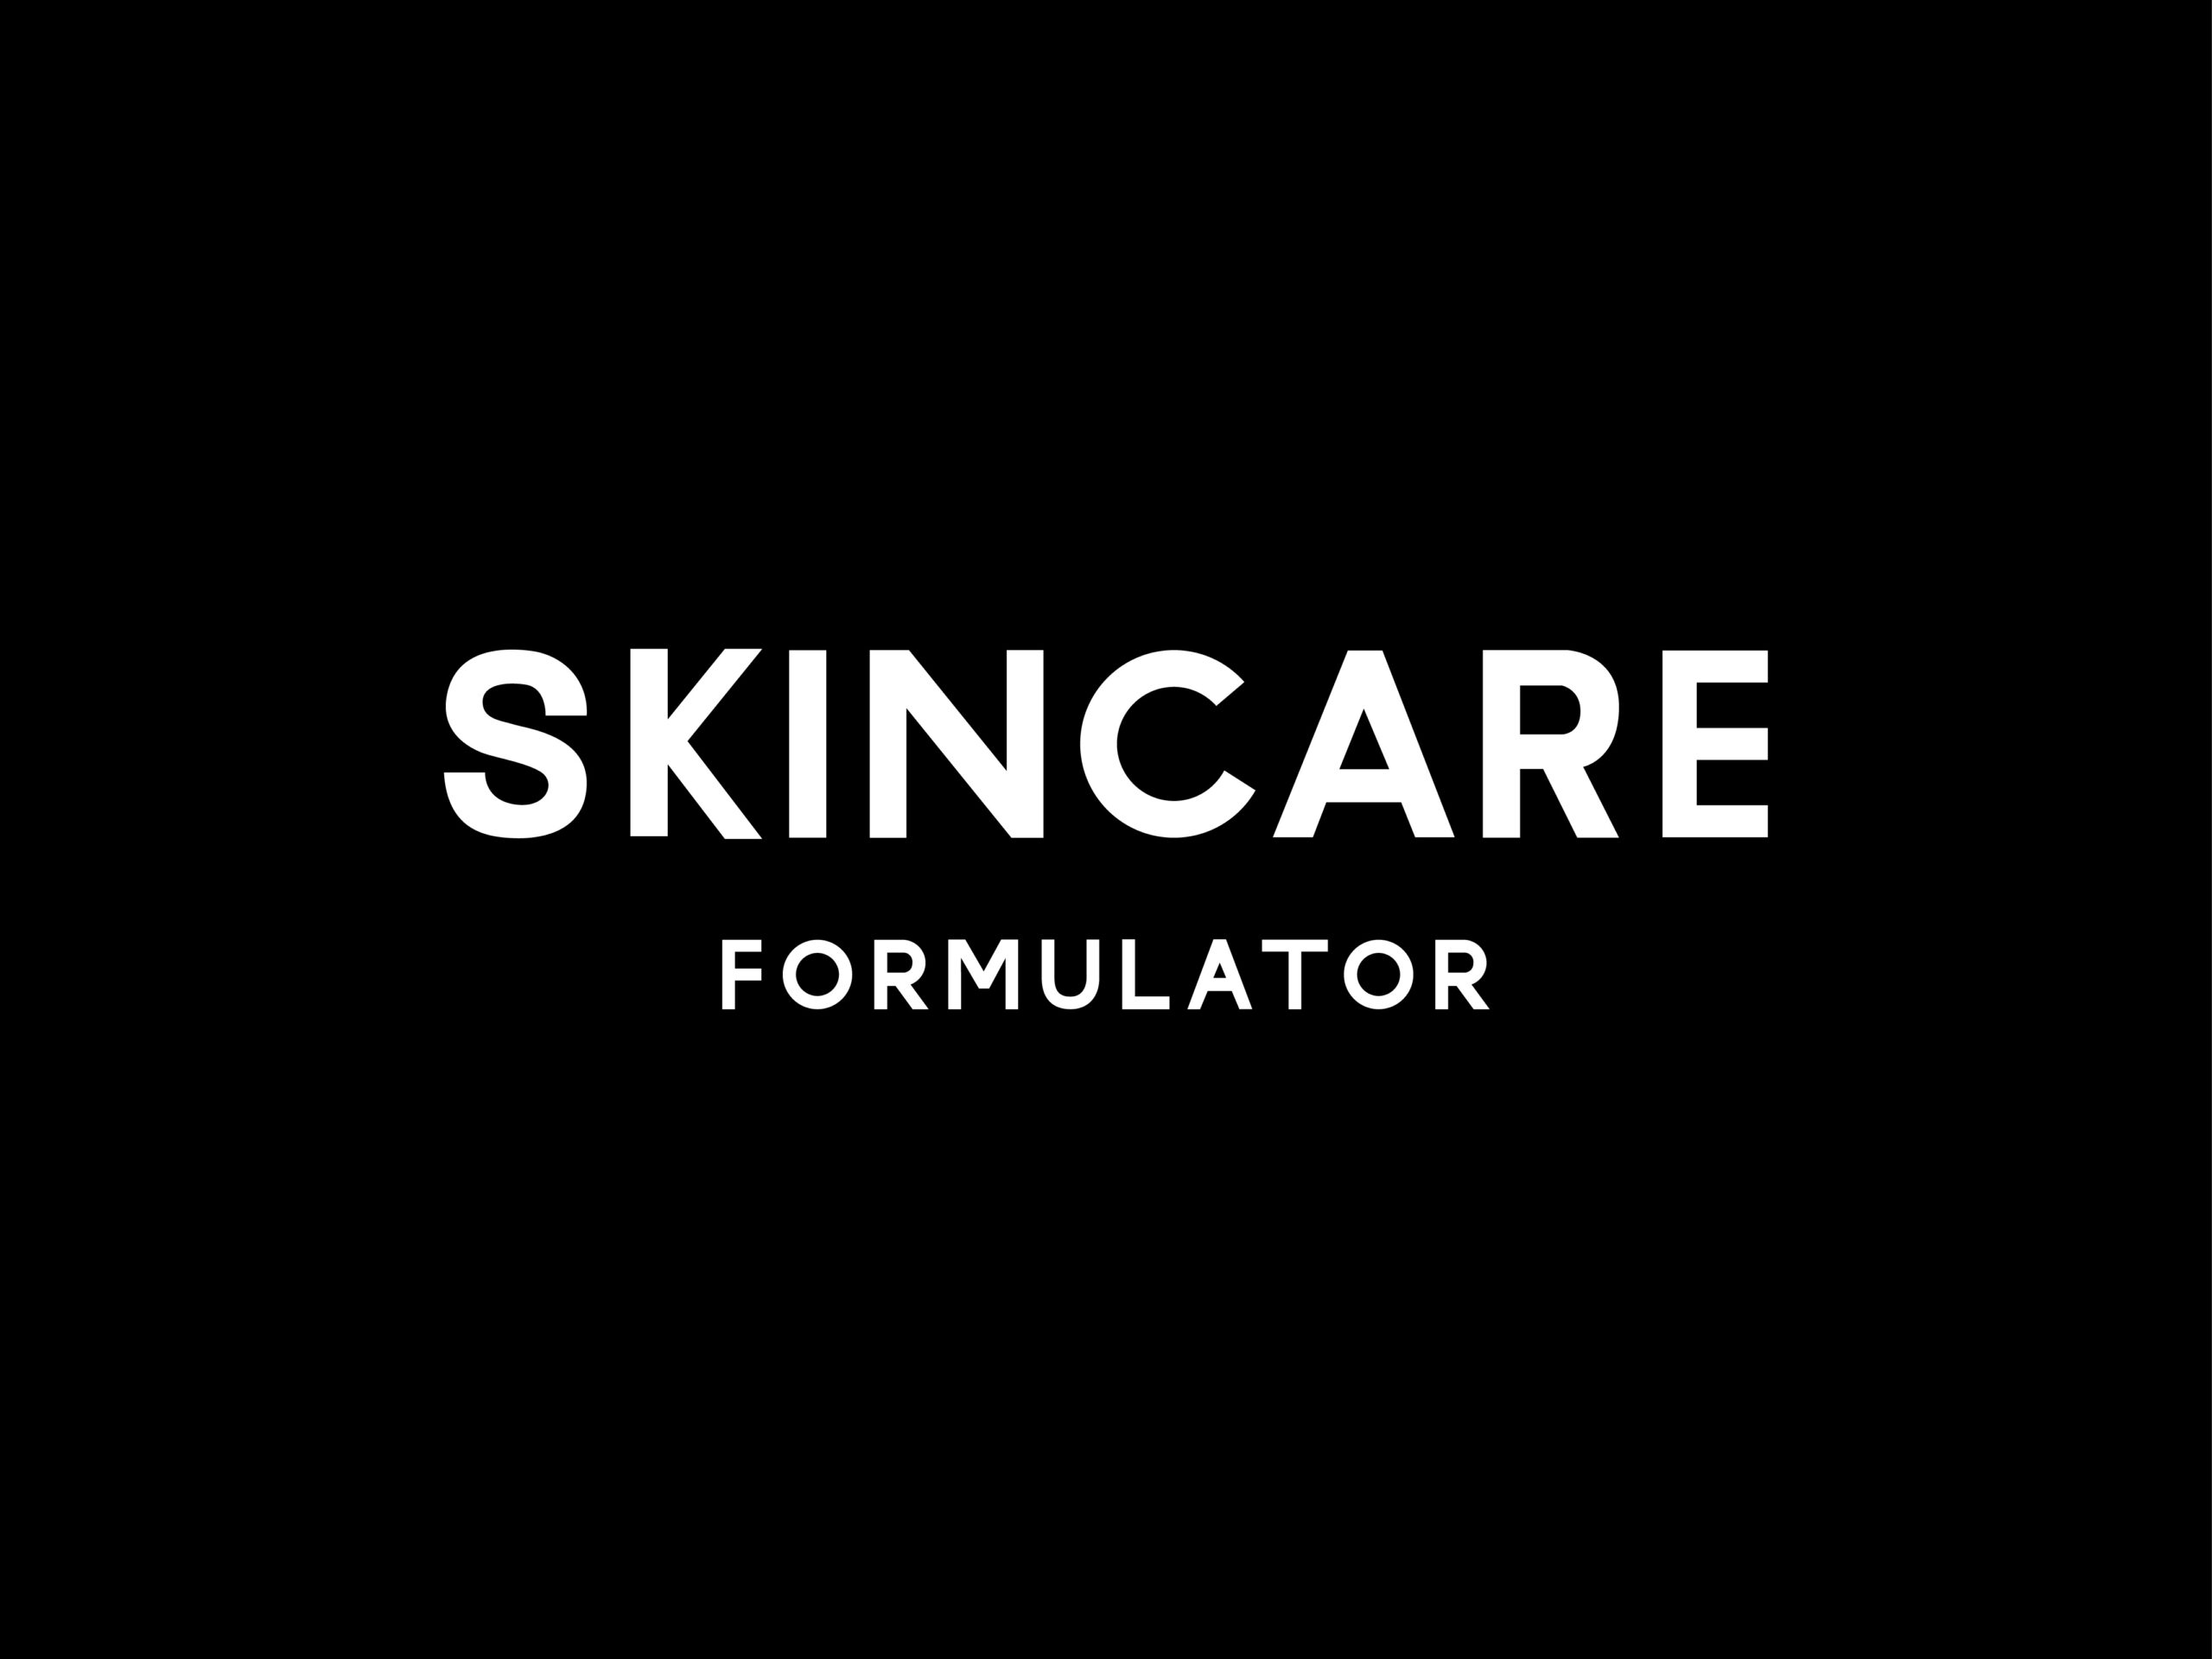 Skincare Formulator